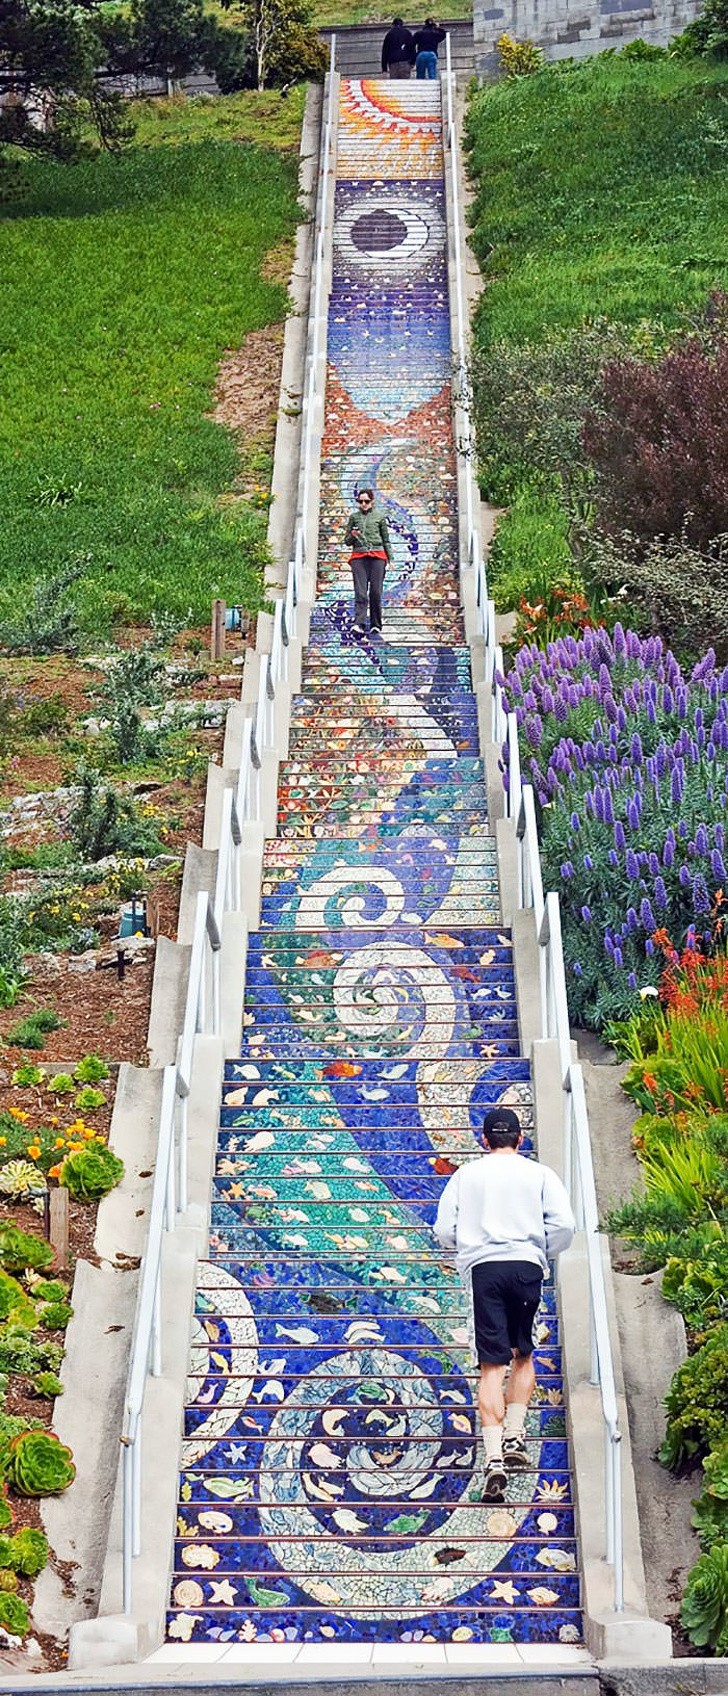 8. Les mosaïques d'Aileen Barr et Colette Crutcher sur les escaliers de San Francisco